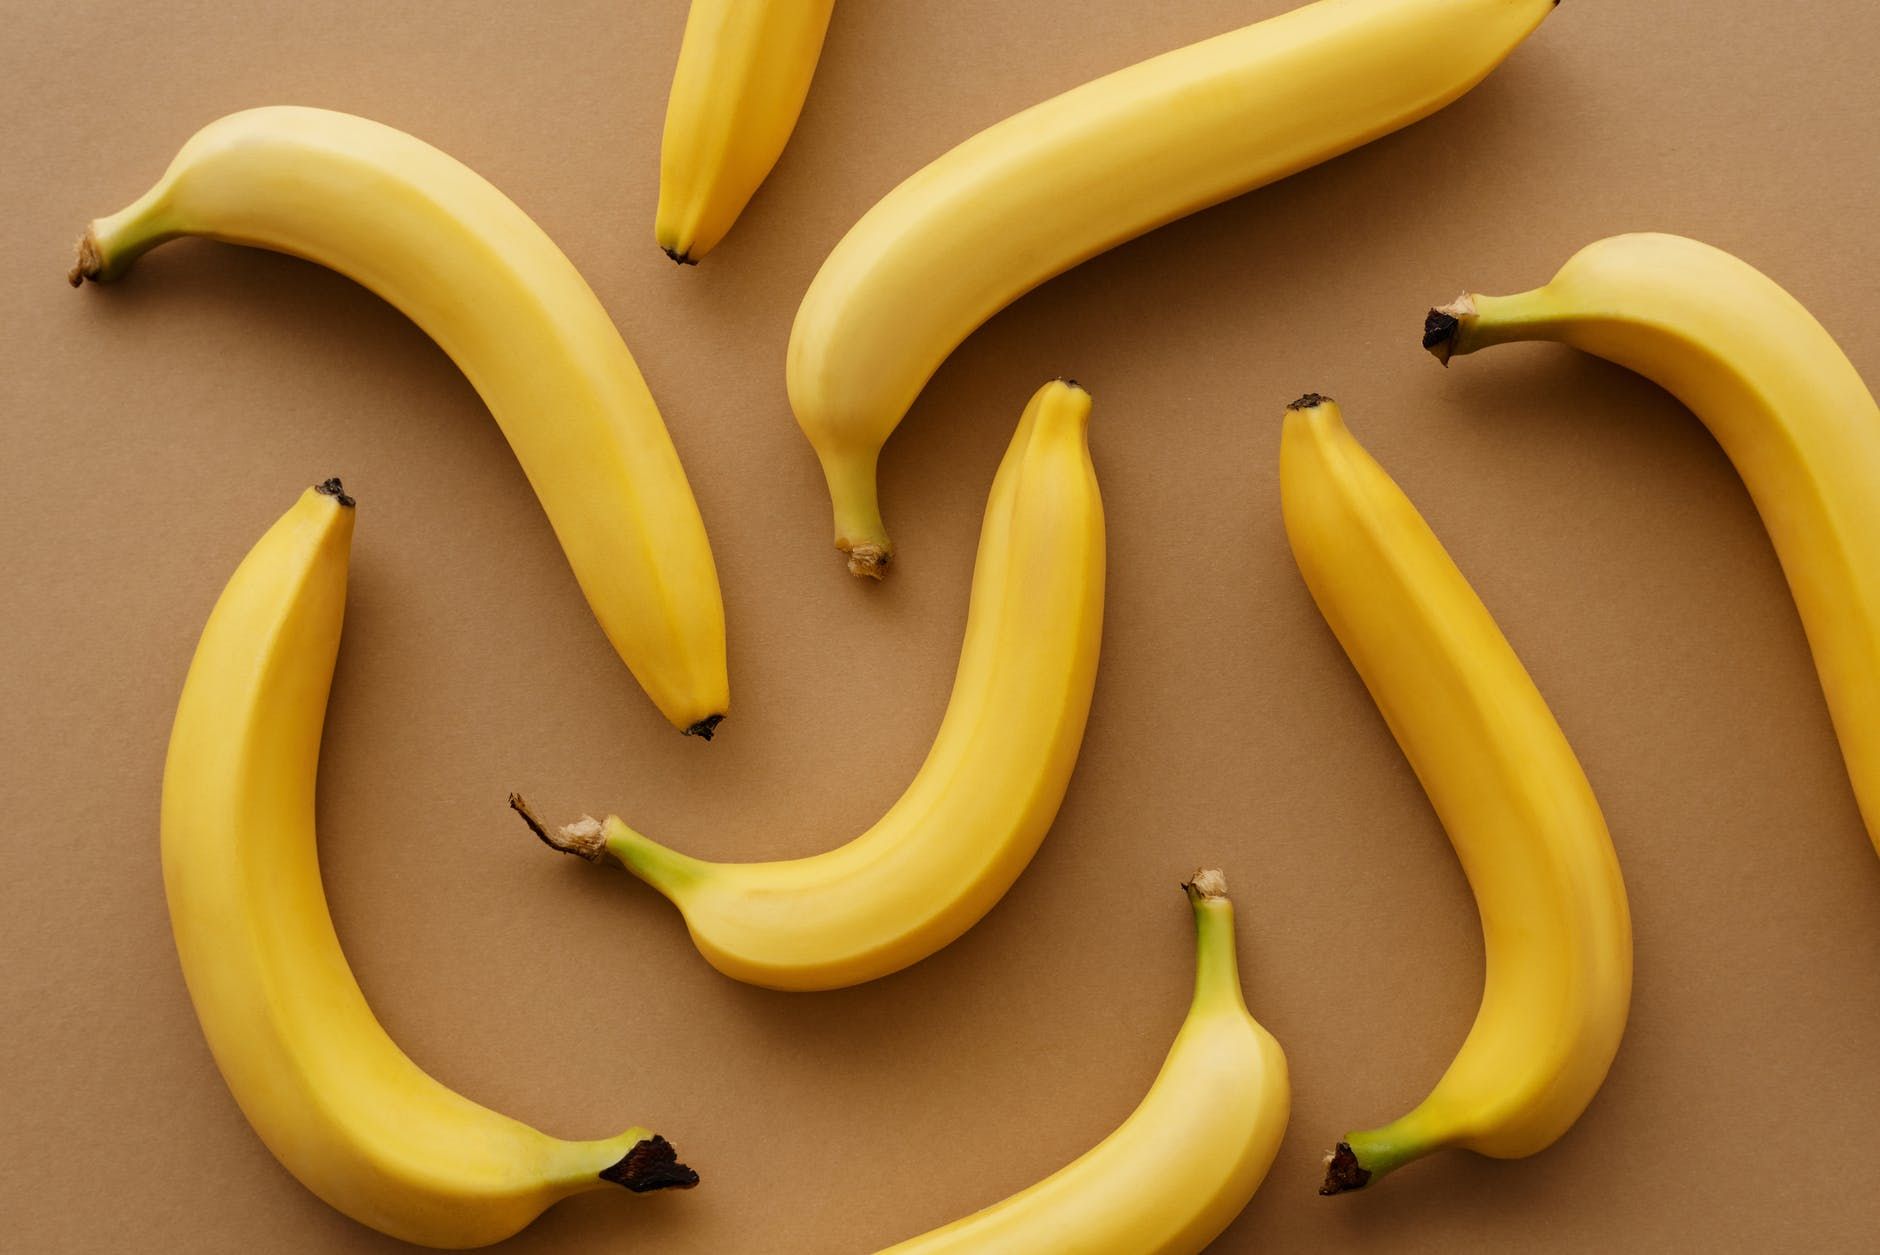 Чтобы бананы не чернели: 2 рабочих лайфхака, как хранить зеленые и спелые плоды